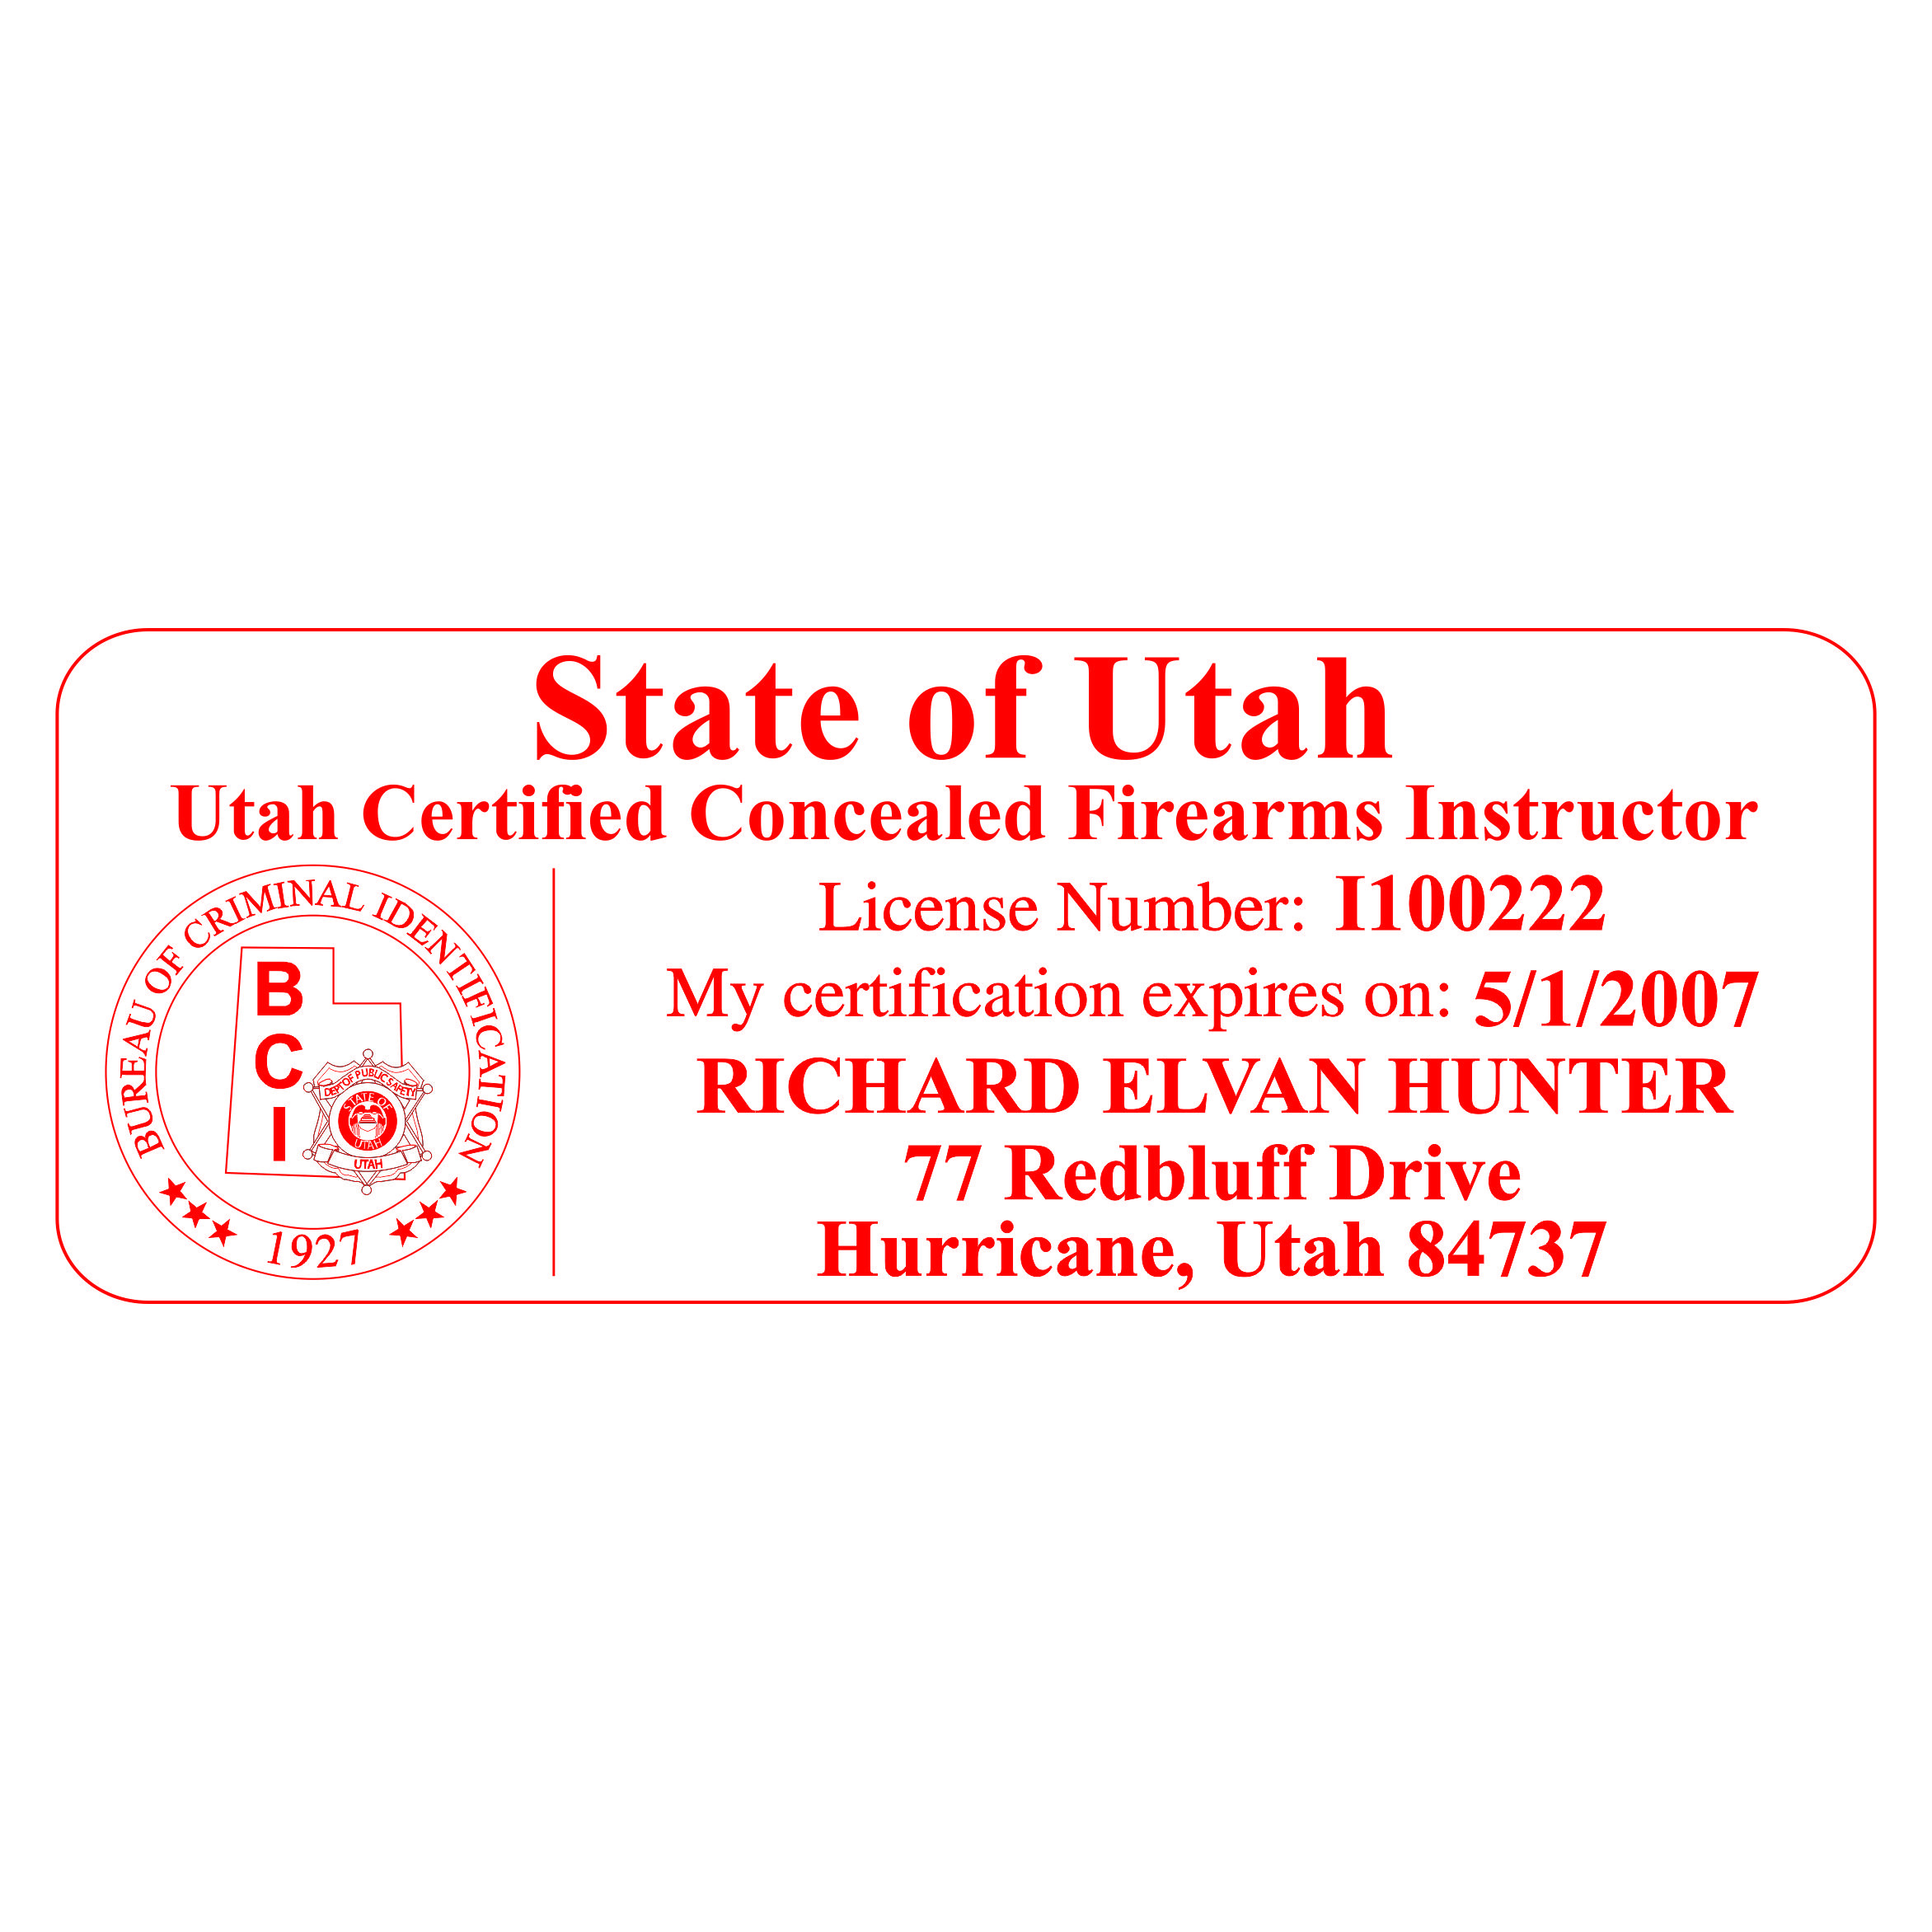 Utah Concealed Firearms Instructor Seal Stamp - Pre-inked